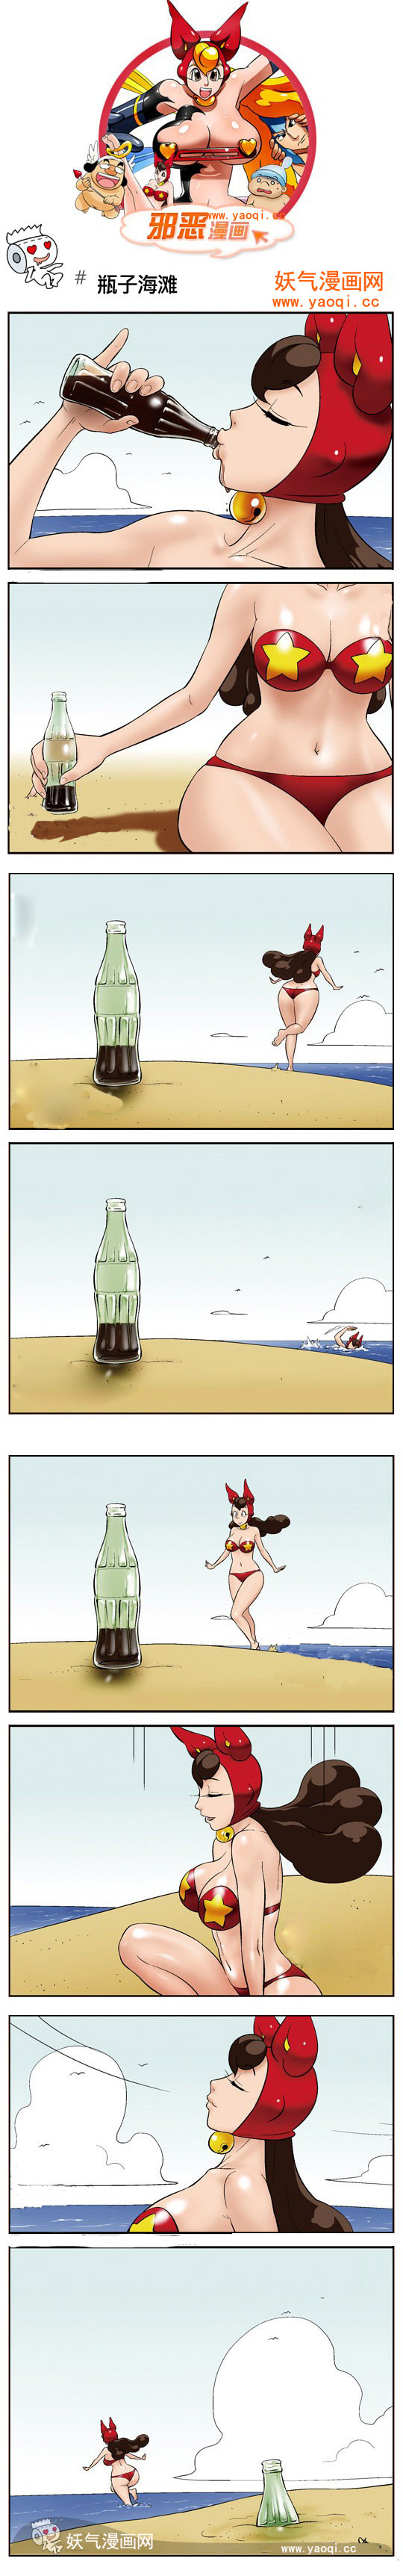 邪恶漫画之海滩瓶子